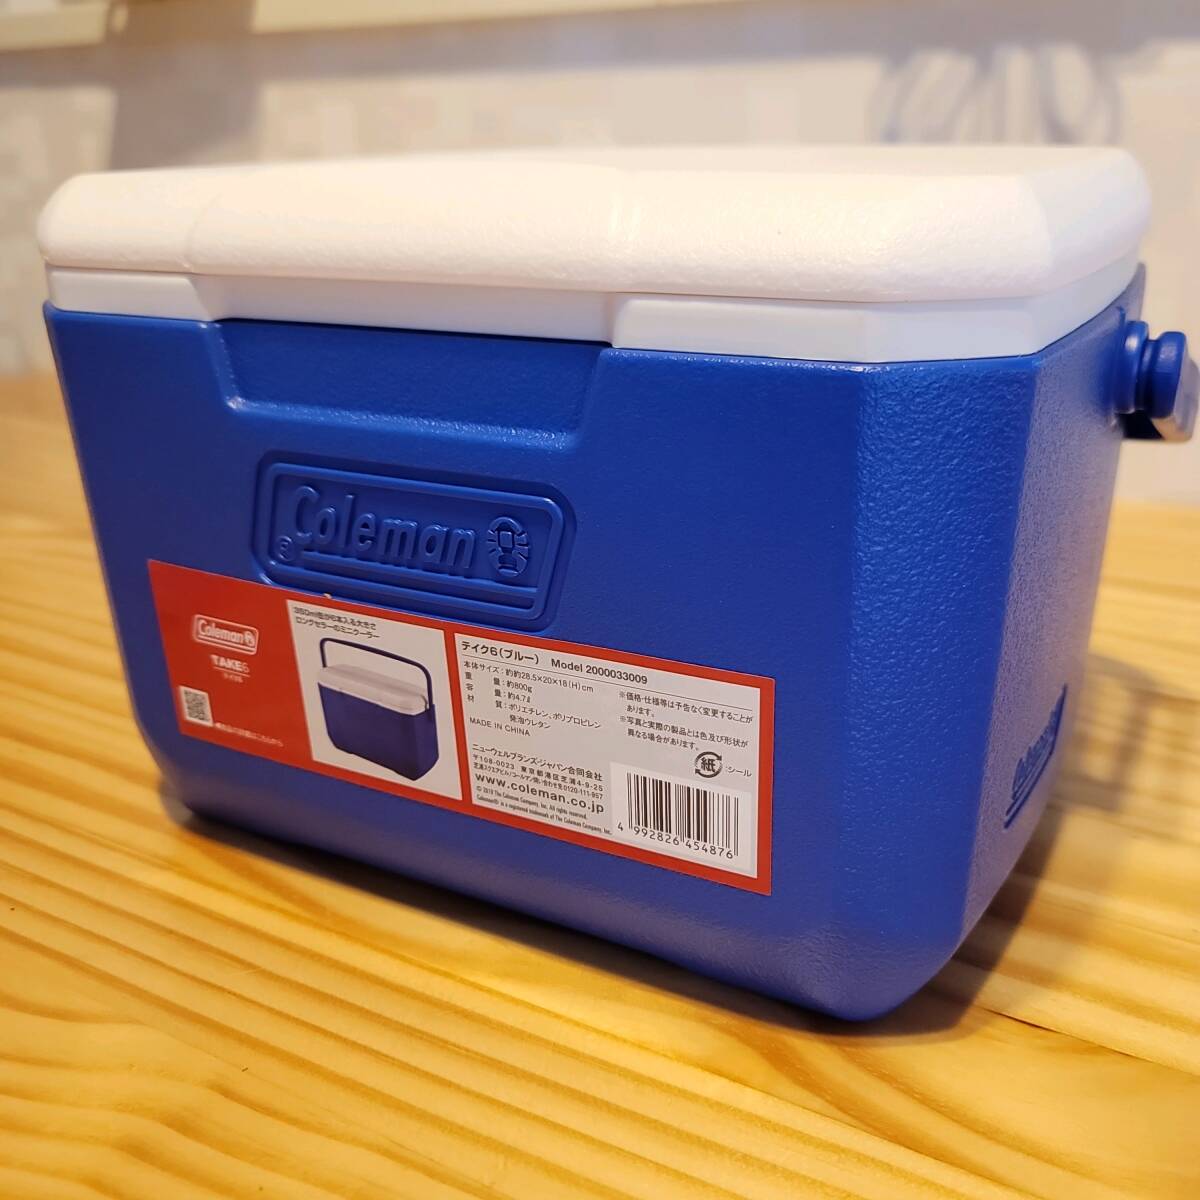 2201 Coleman Coleman cooler-box Take 6 голубой емкость примерно 4.7L примерно 28.5×20×18(h)cm уличный кемпинг часть . отдых термос синий 